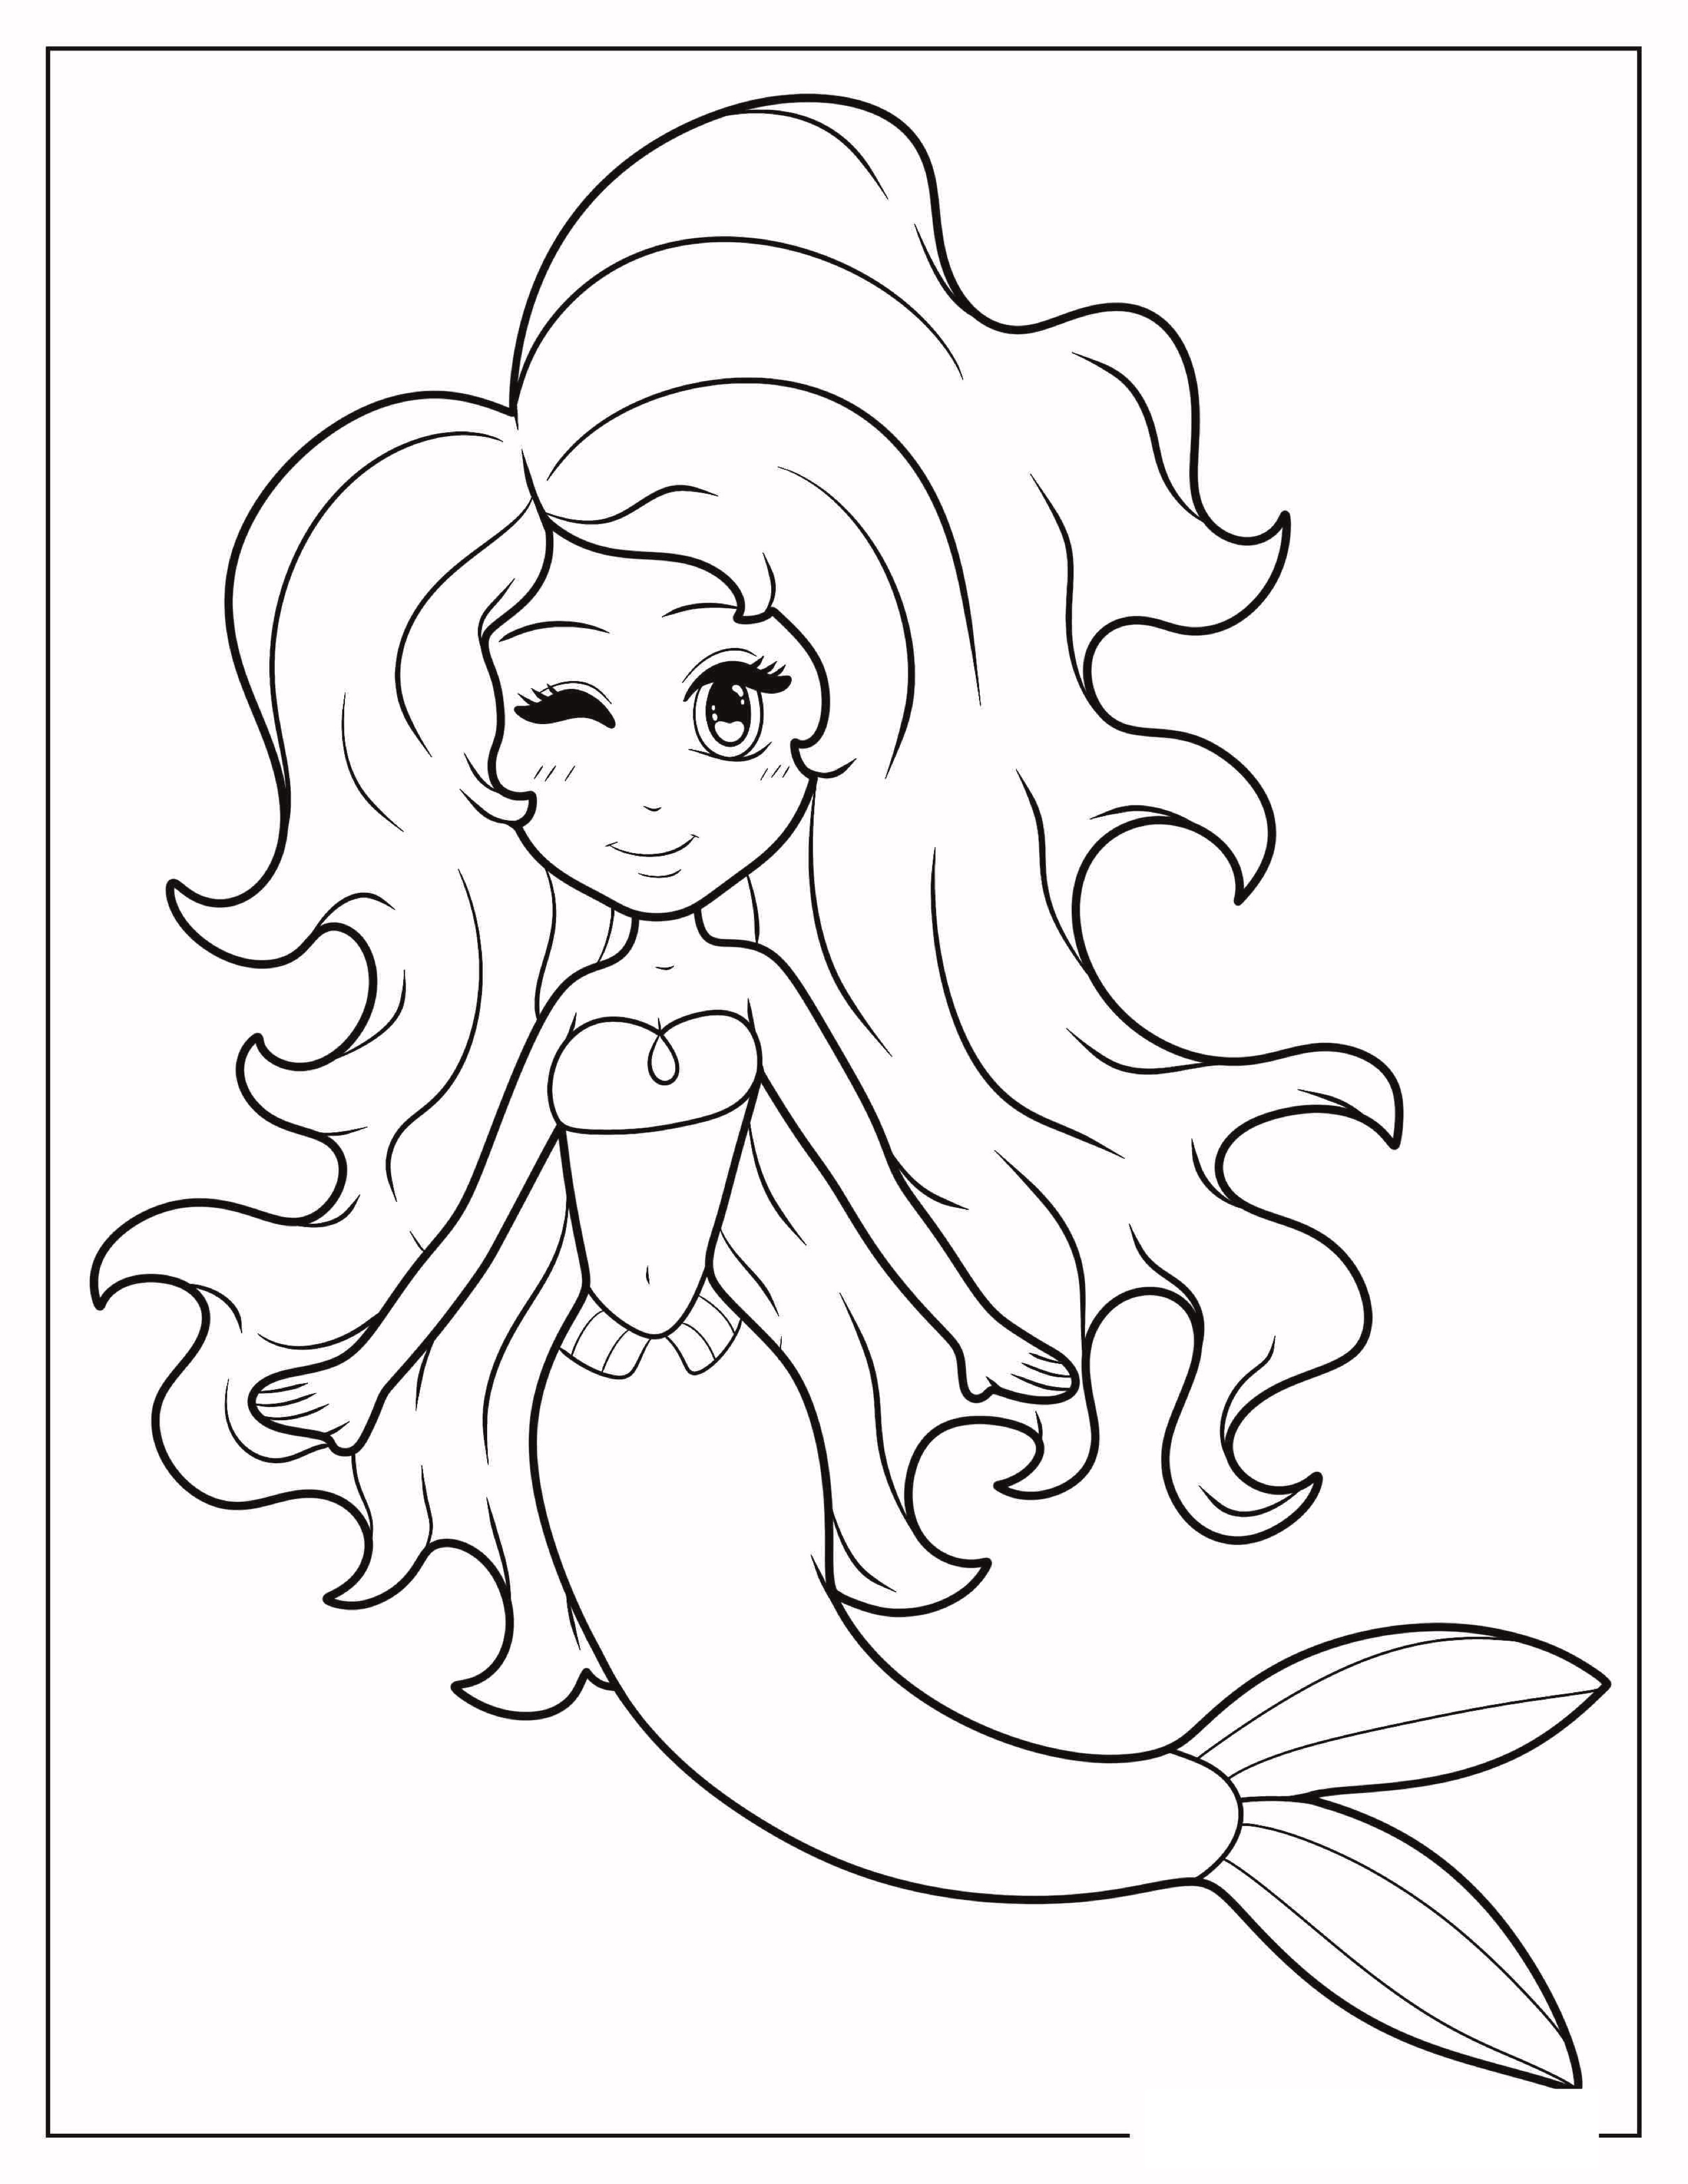 Mermaid-Winking-Coloring-In-For-Preschoolers.jpg